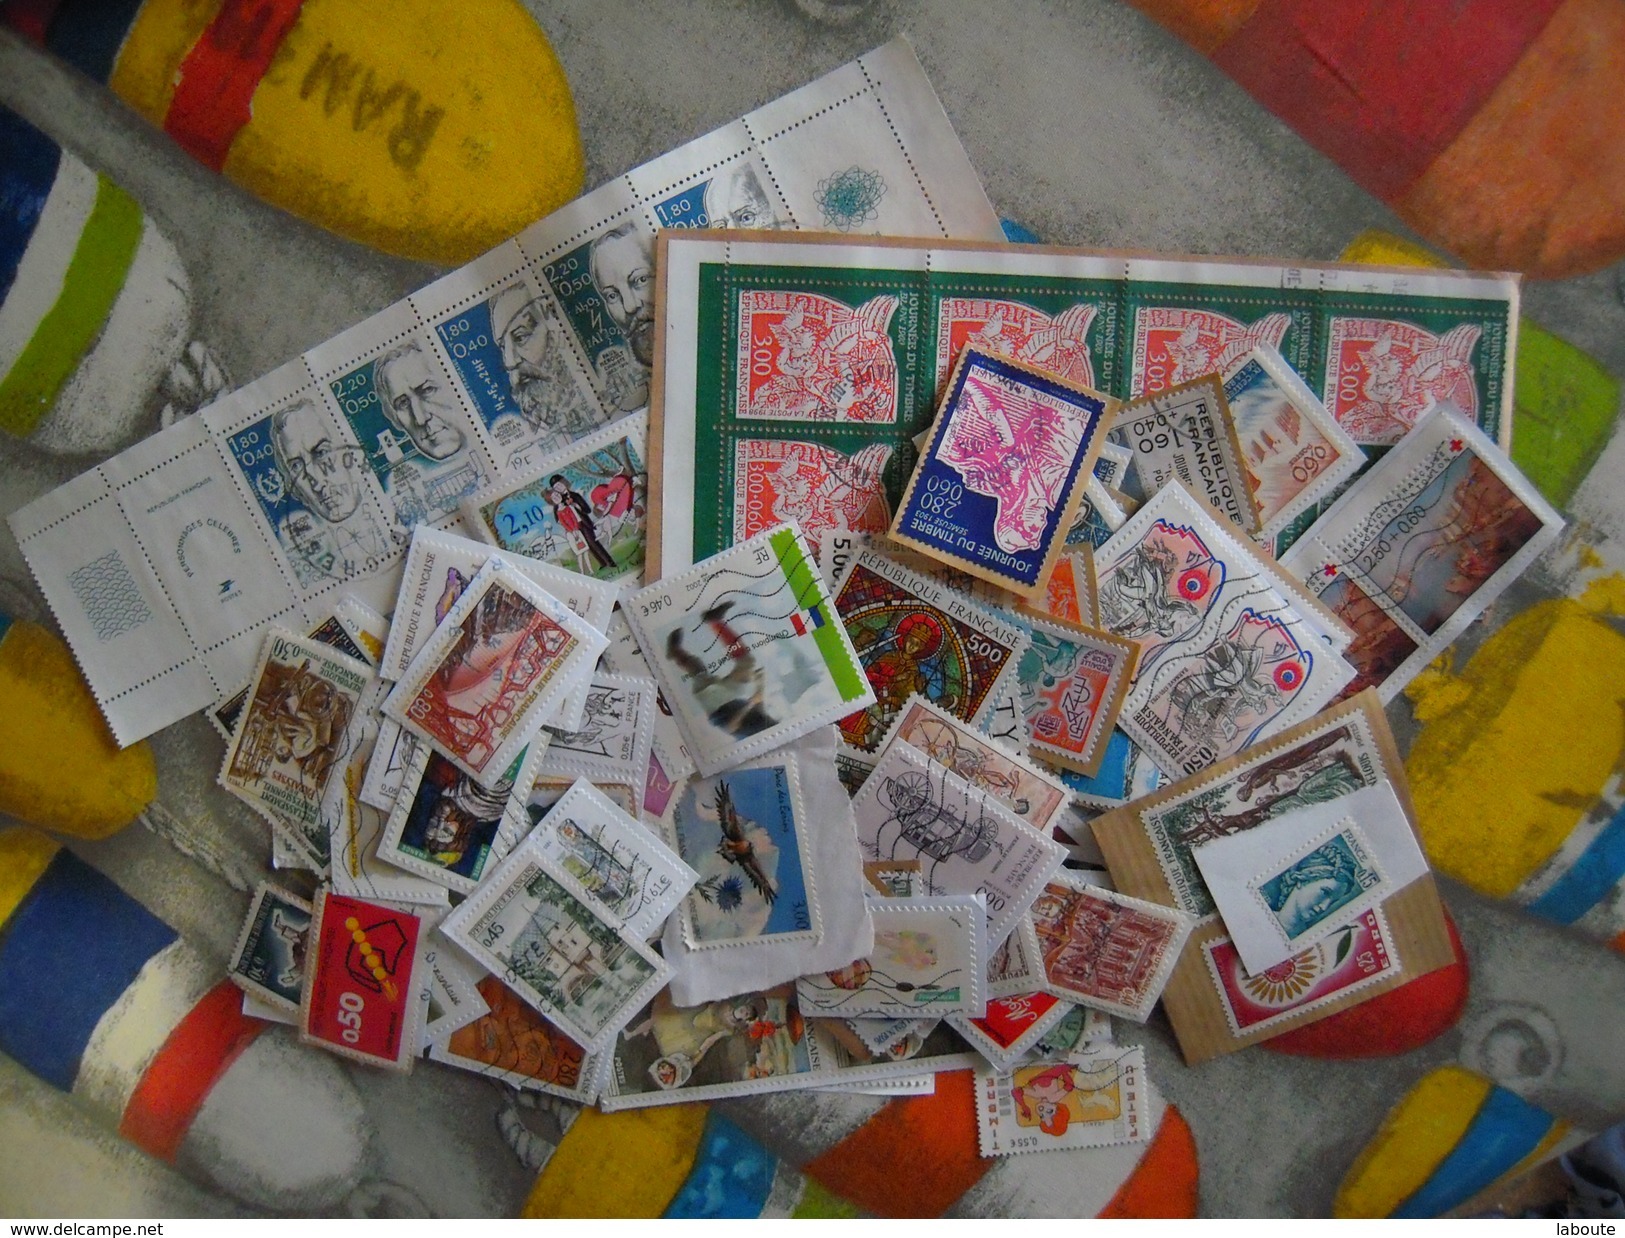 FRANCE - Collection de timbres - Plus de 1.200 timbres - A voir -  !!!!!!!